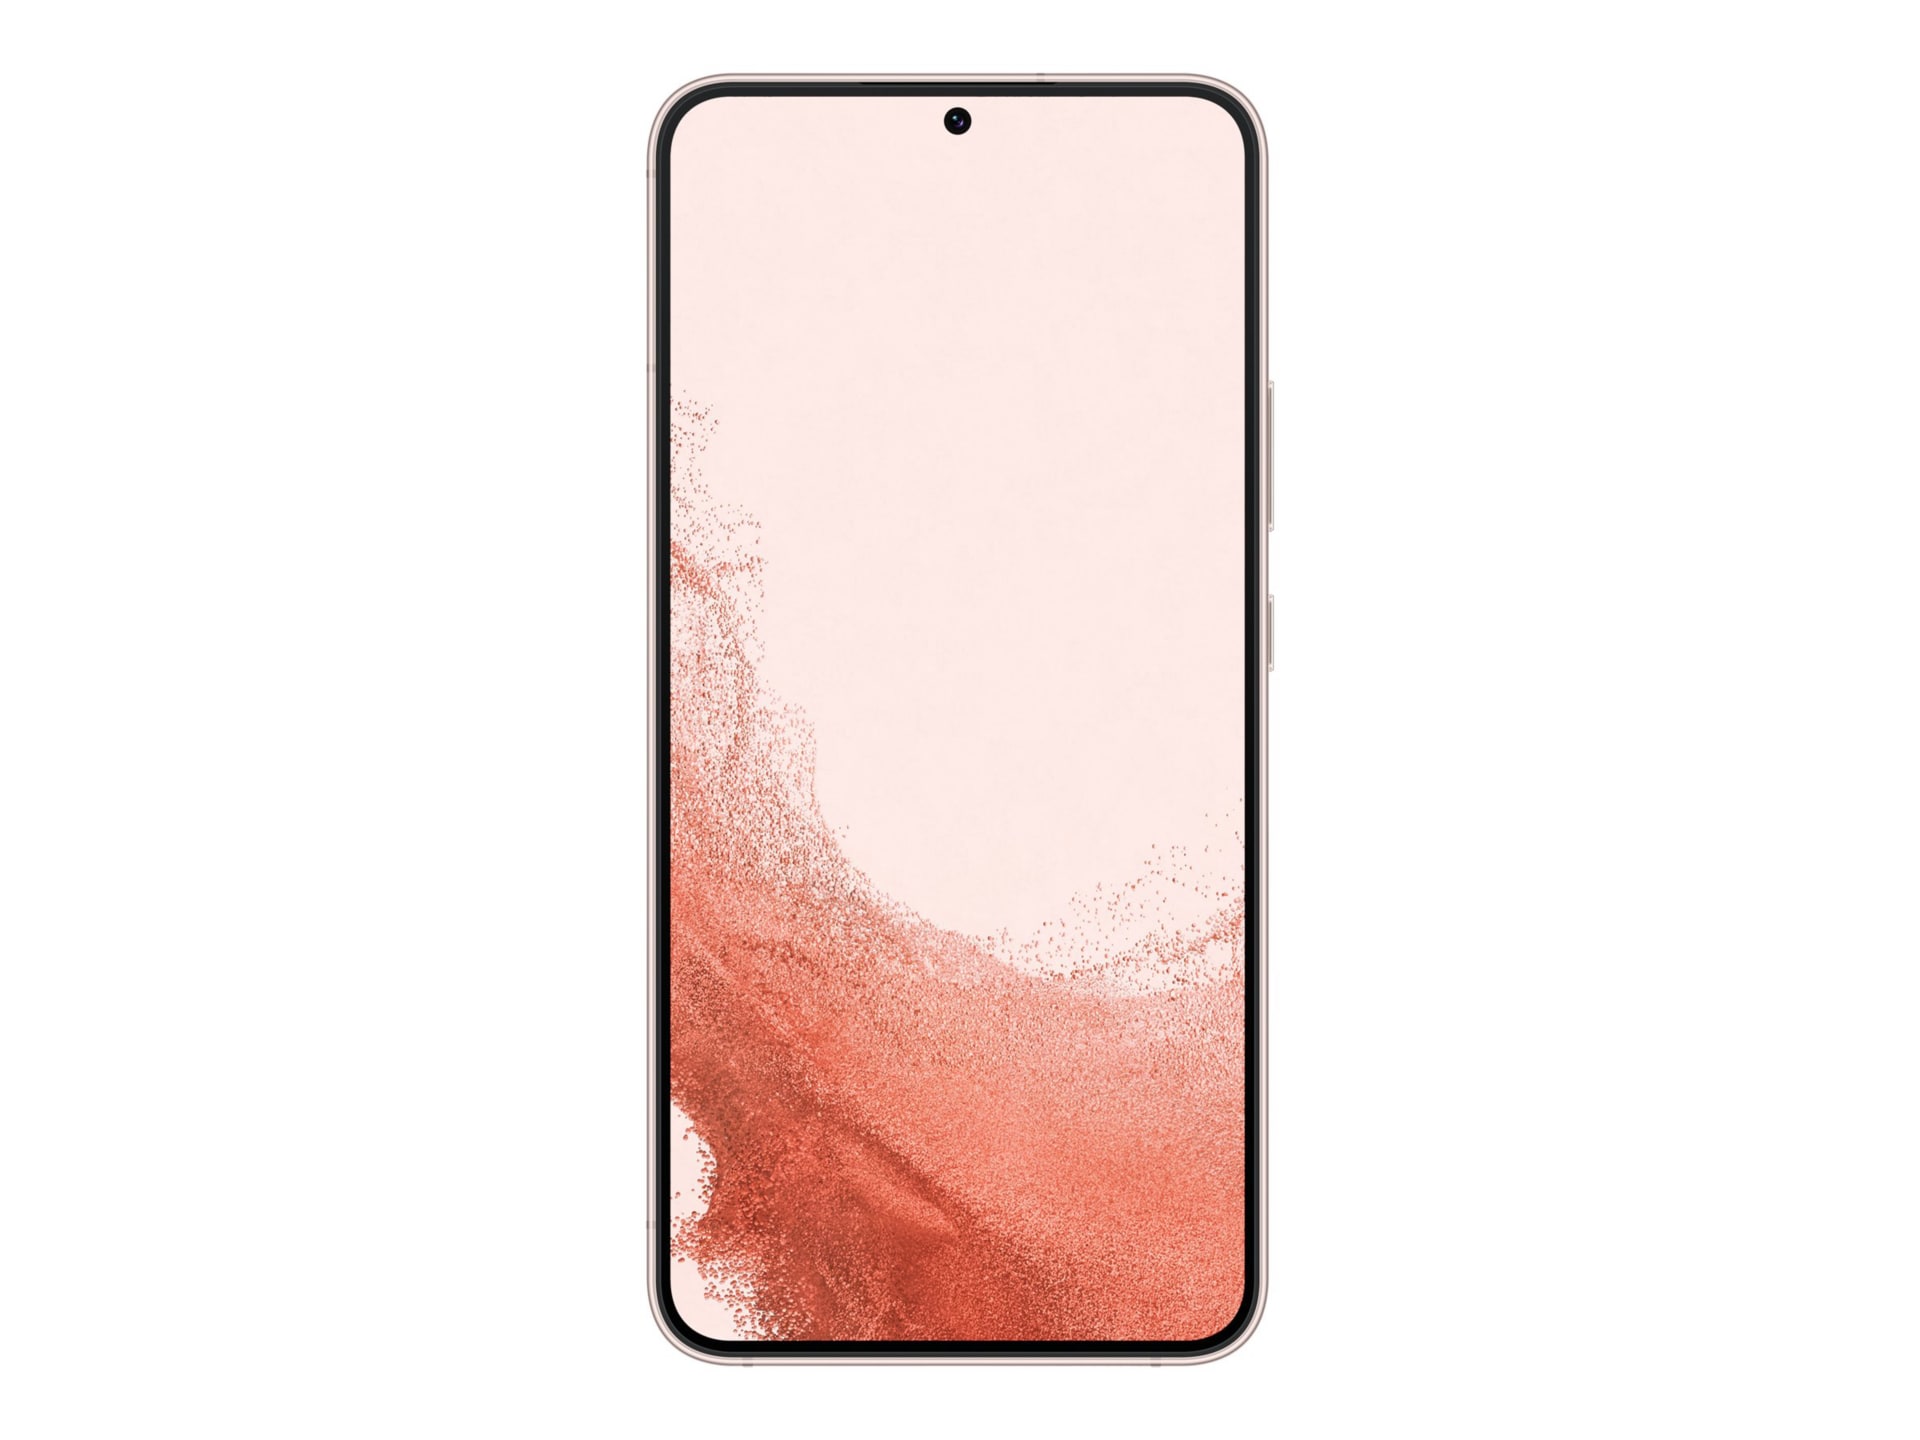 Samsung Galaxy S22+ - rose doré - 5G smartphone - 128 Go - GSM